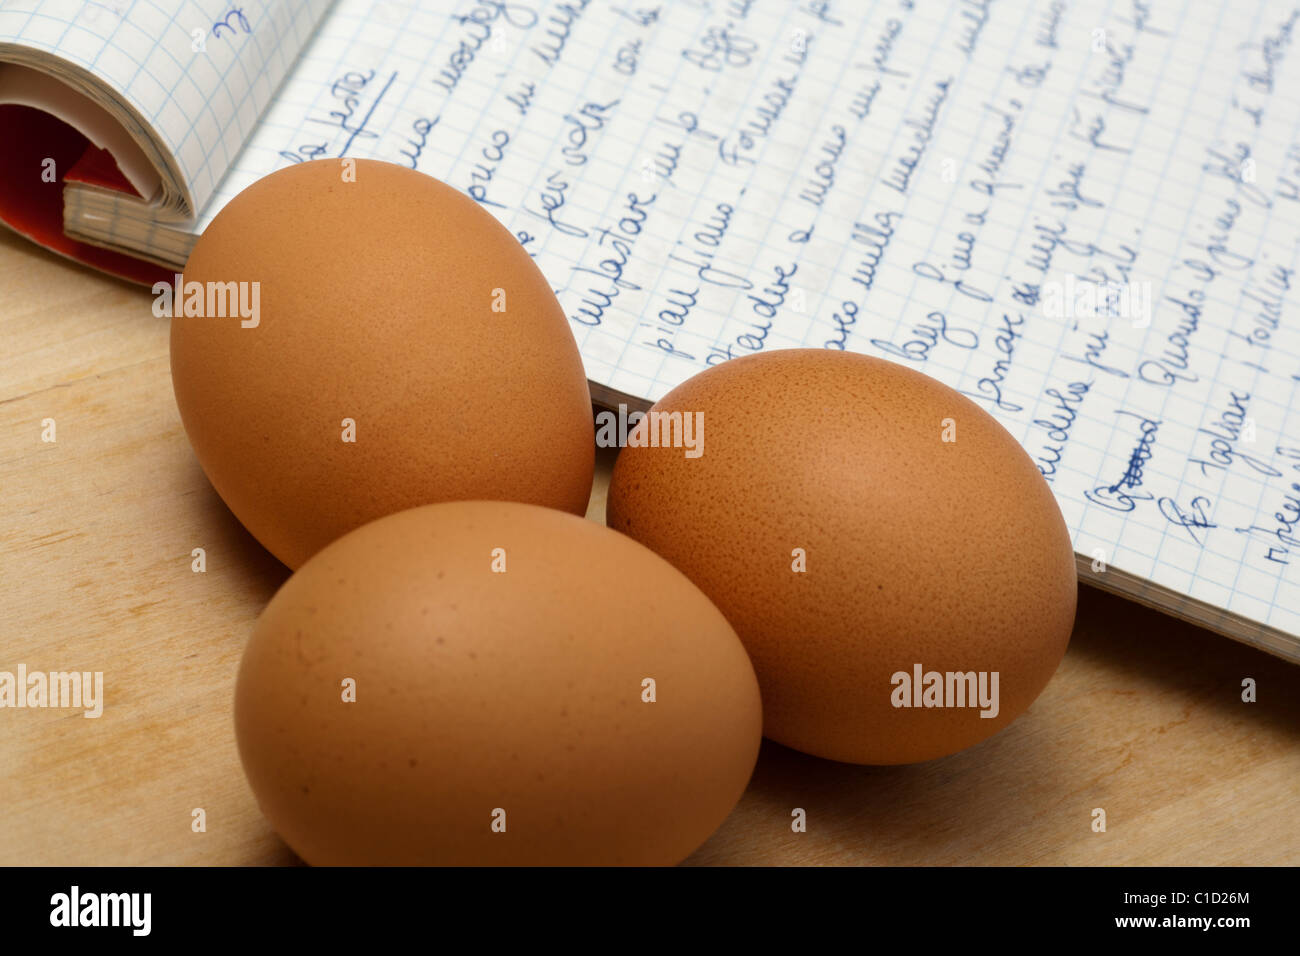 Huevos marrones y recetas manuscritas Foto de stock